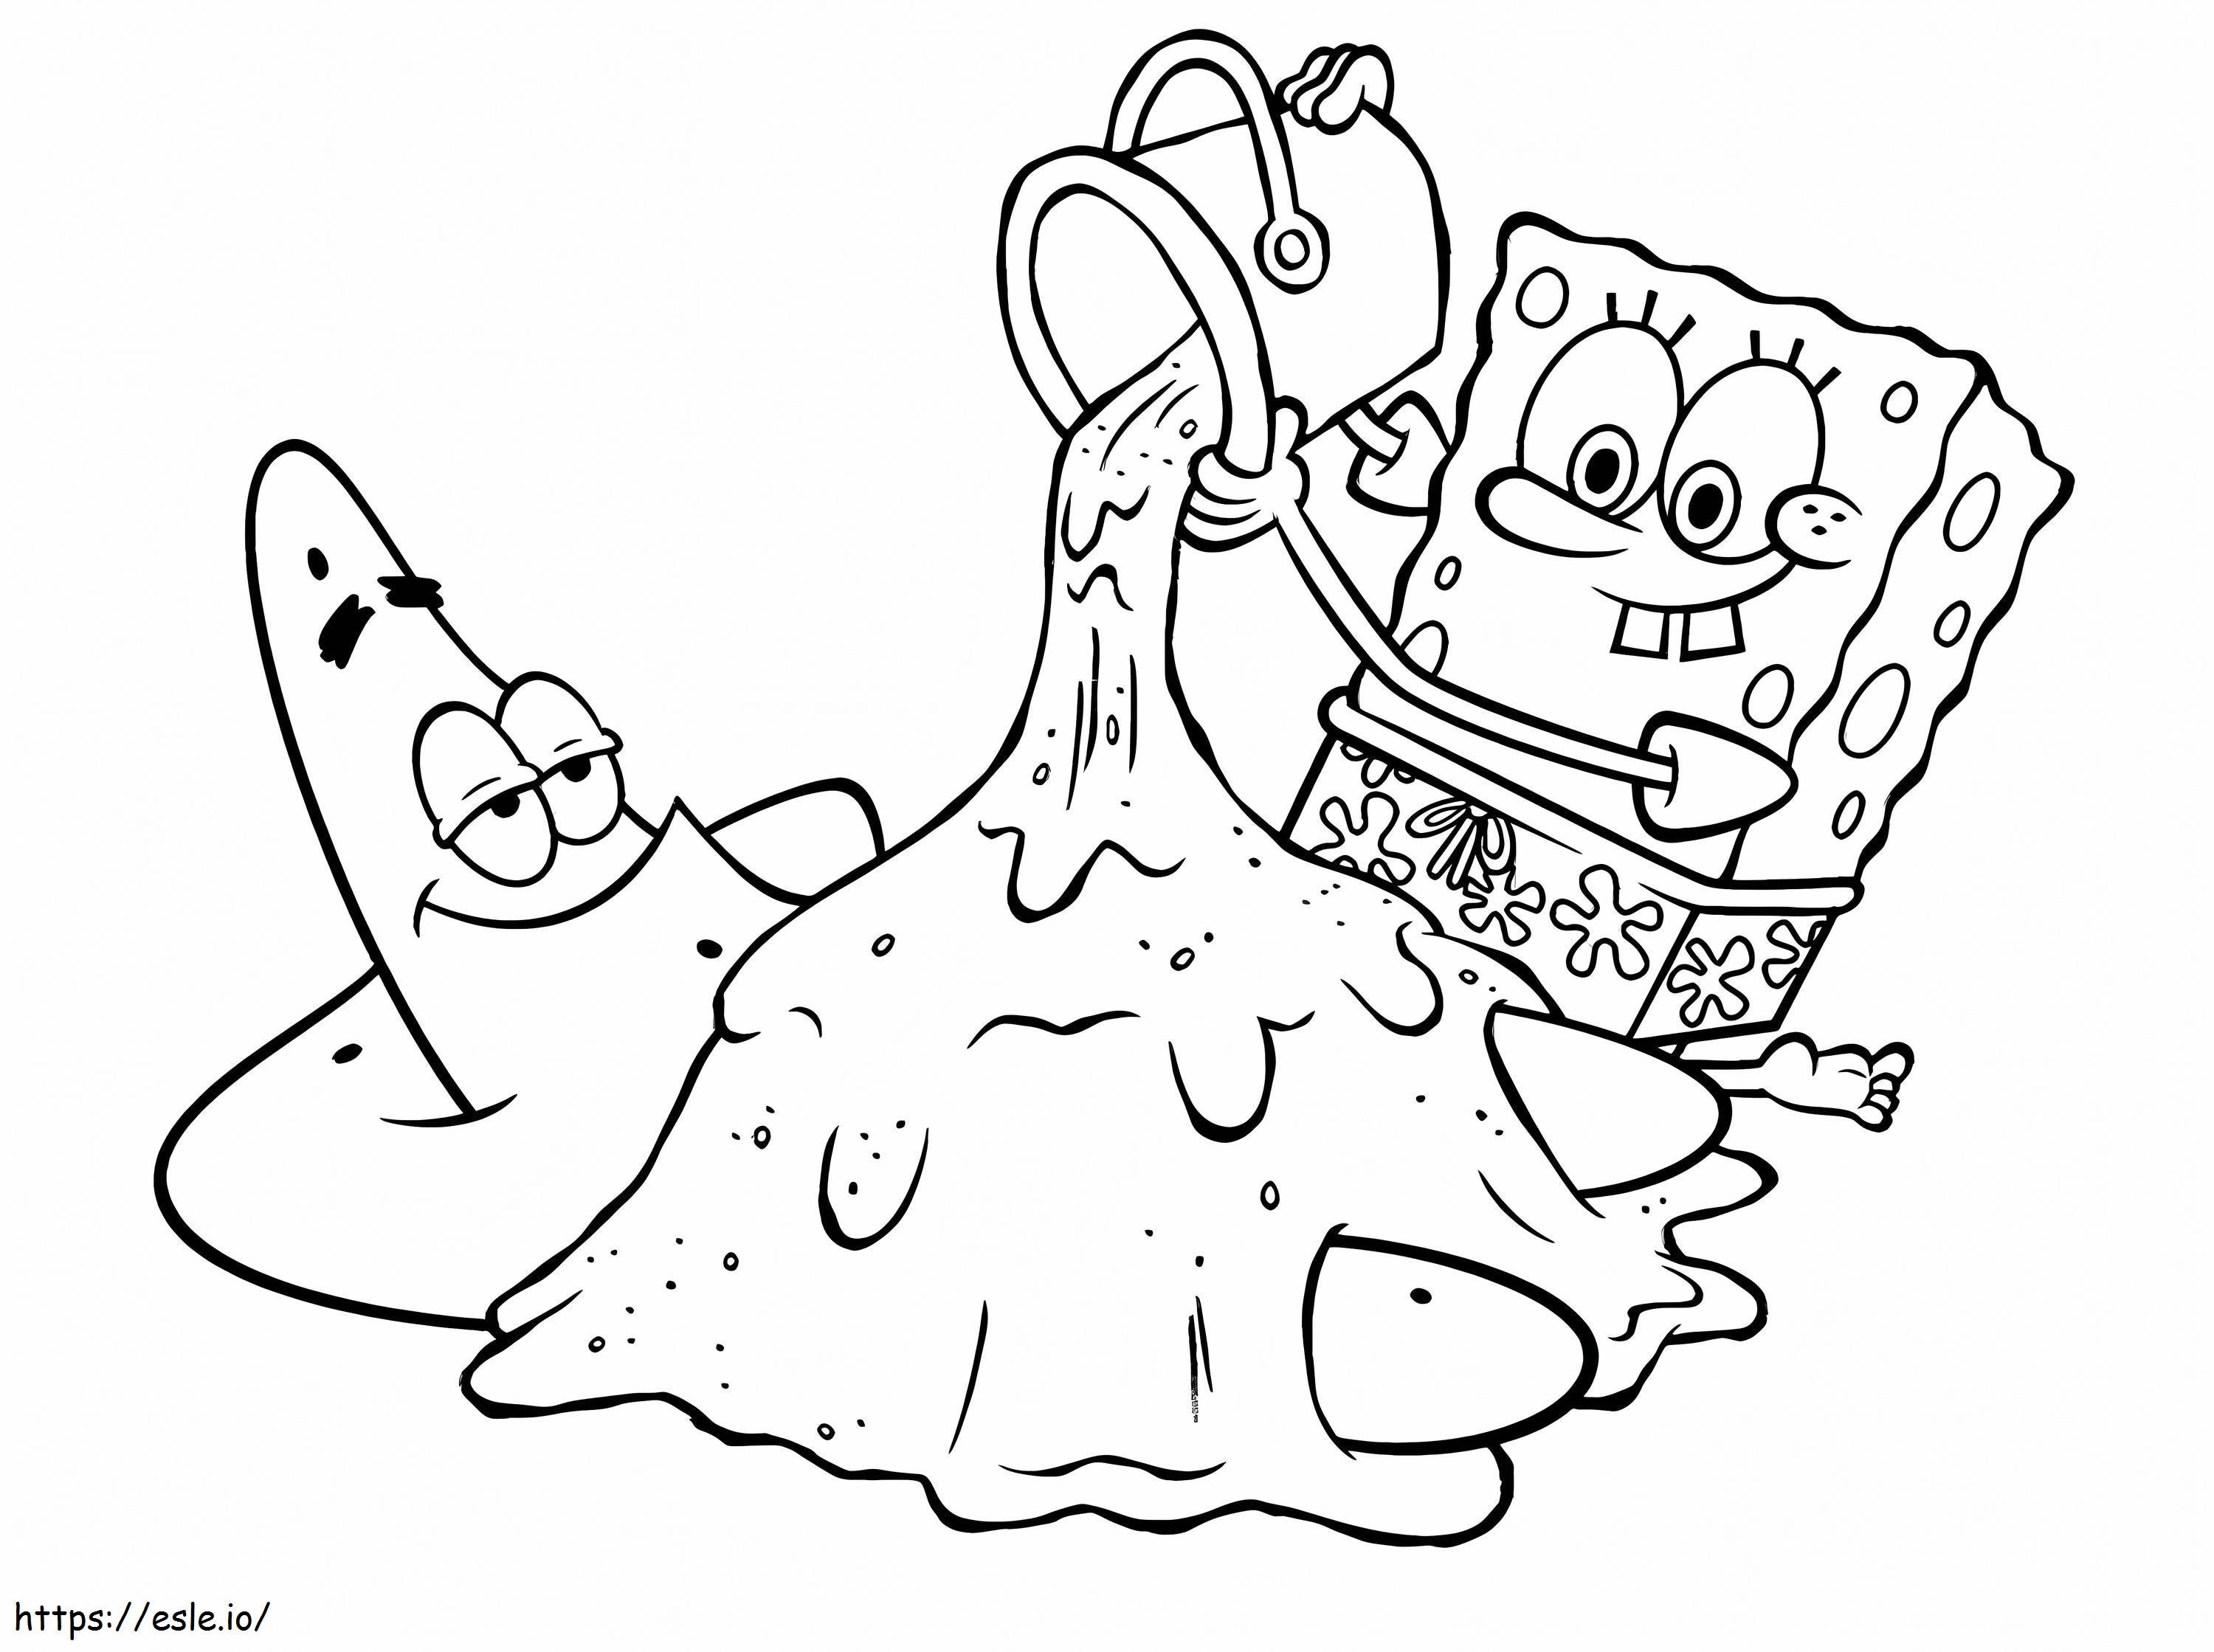 Spongebob und Patrick lustig ausmalbilder